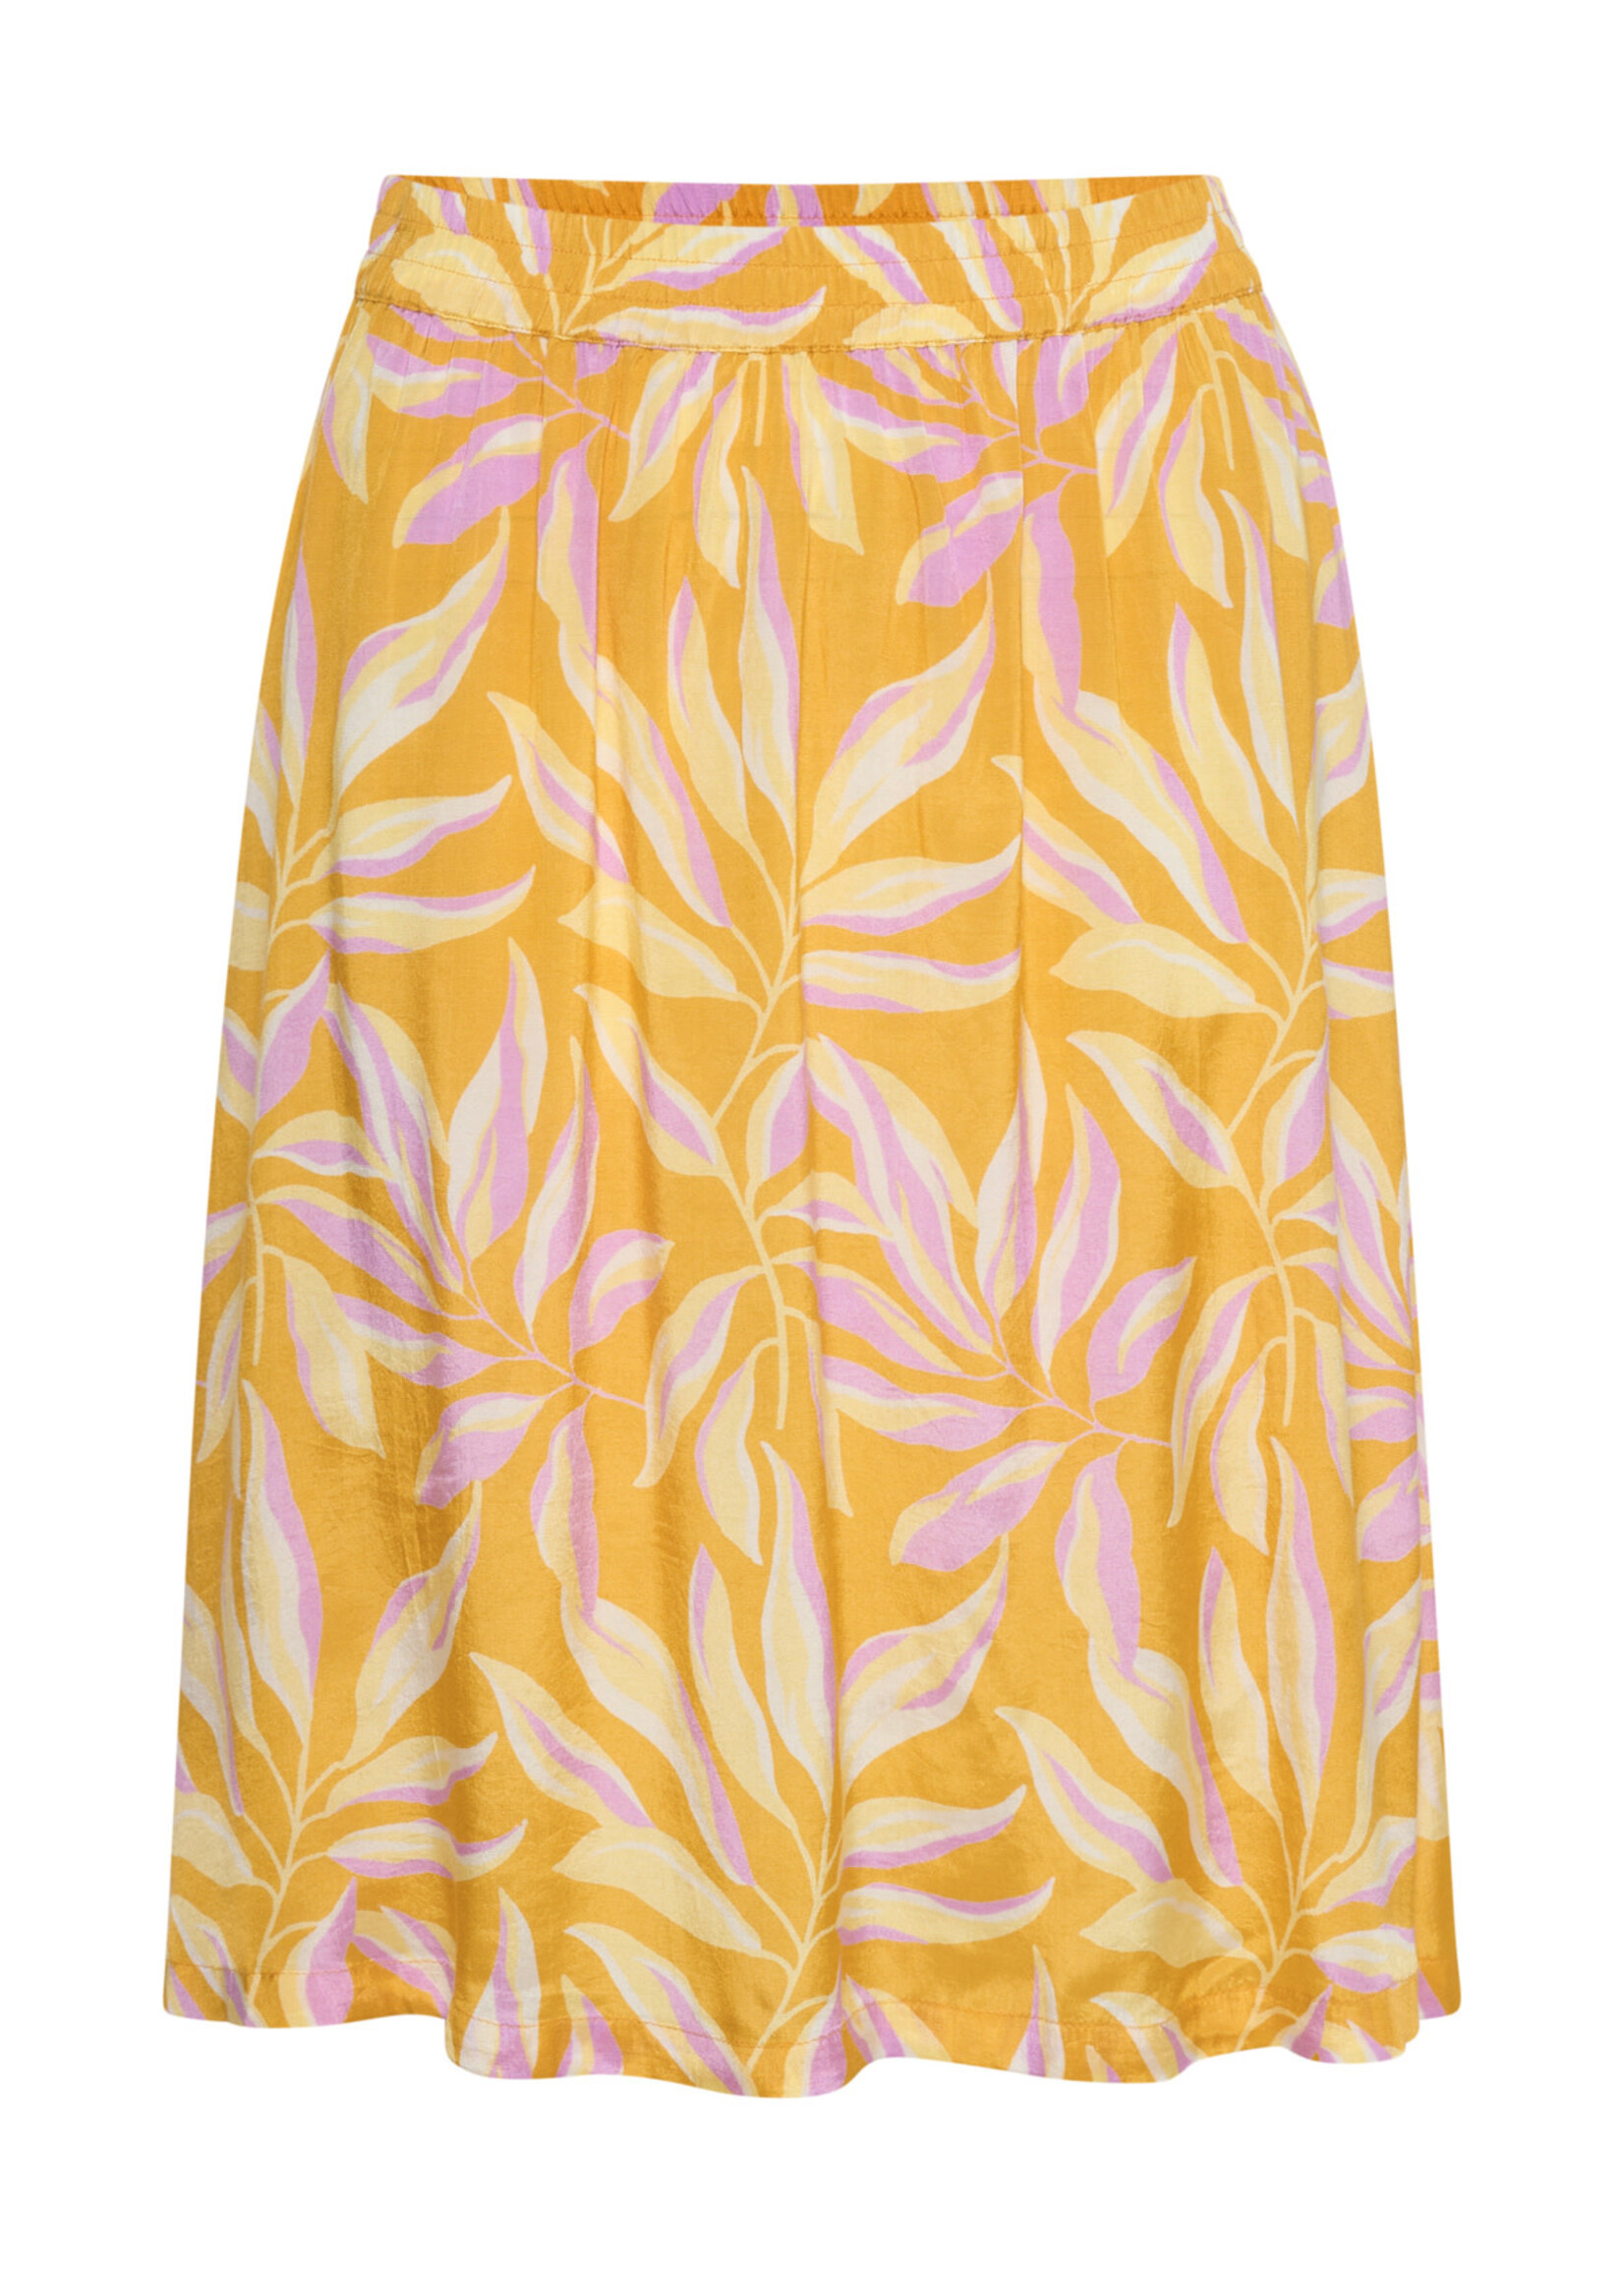 KAFFE Safir skirt - Yellow & lupine flower print